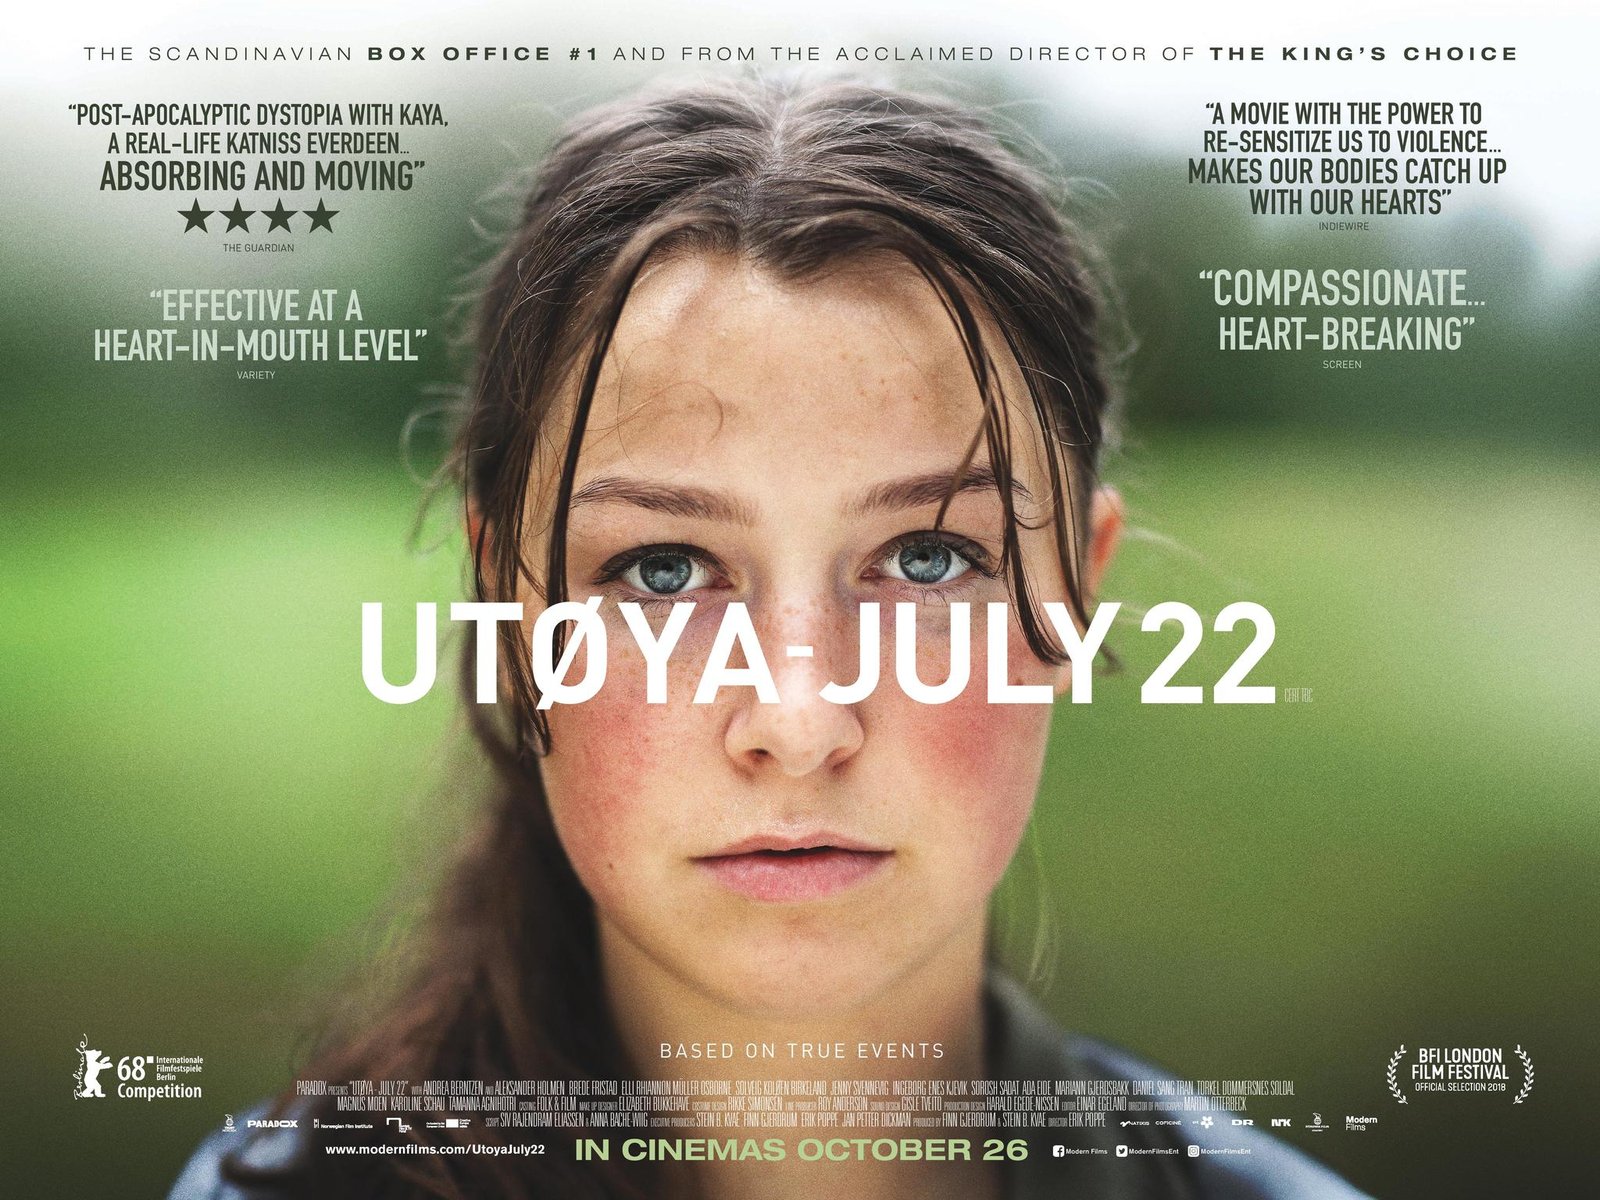 Utoya: July 22